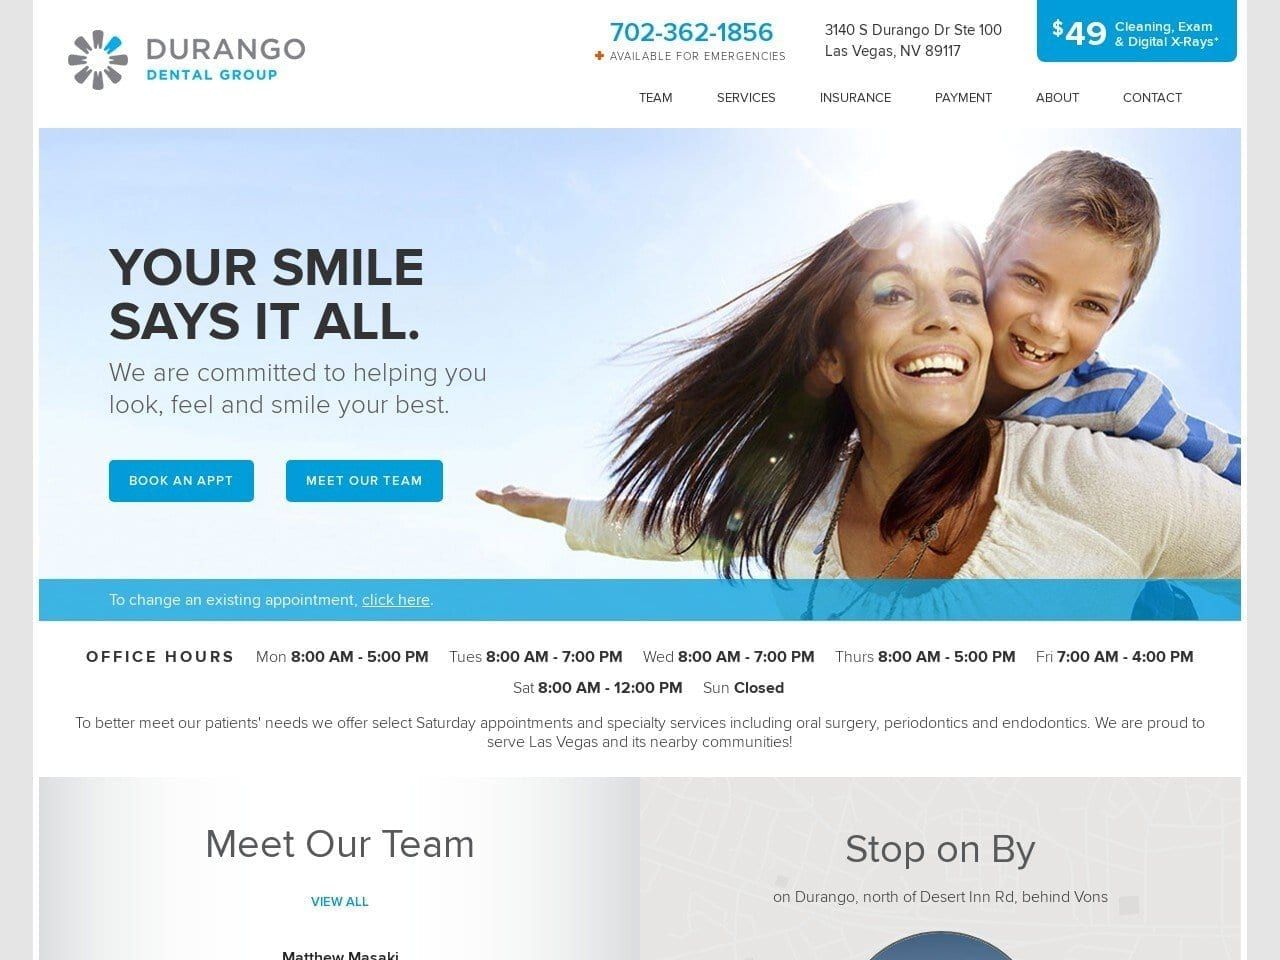 Durango Dental Group Website Screenshot from durangodentalgroup.com